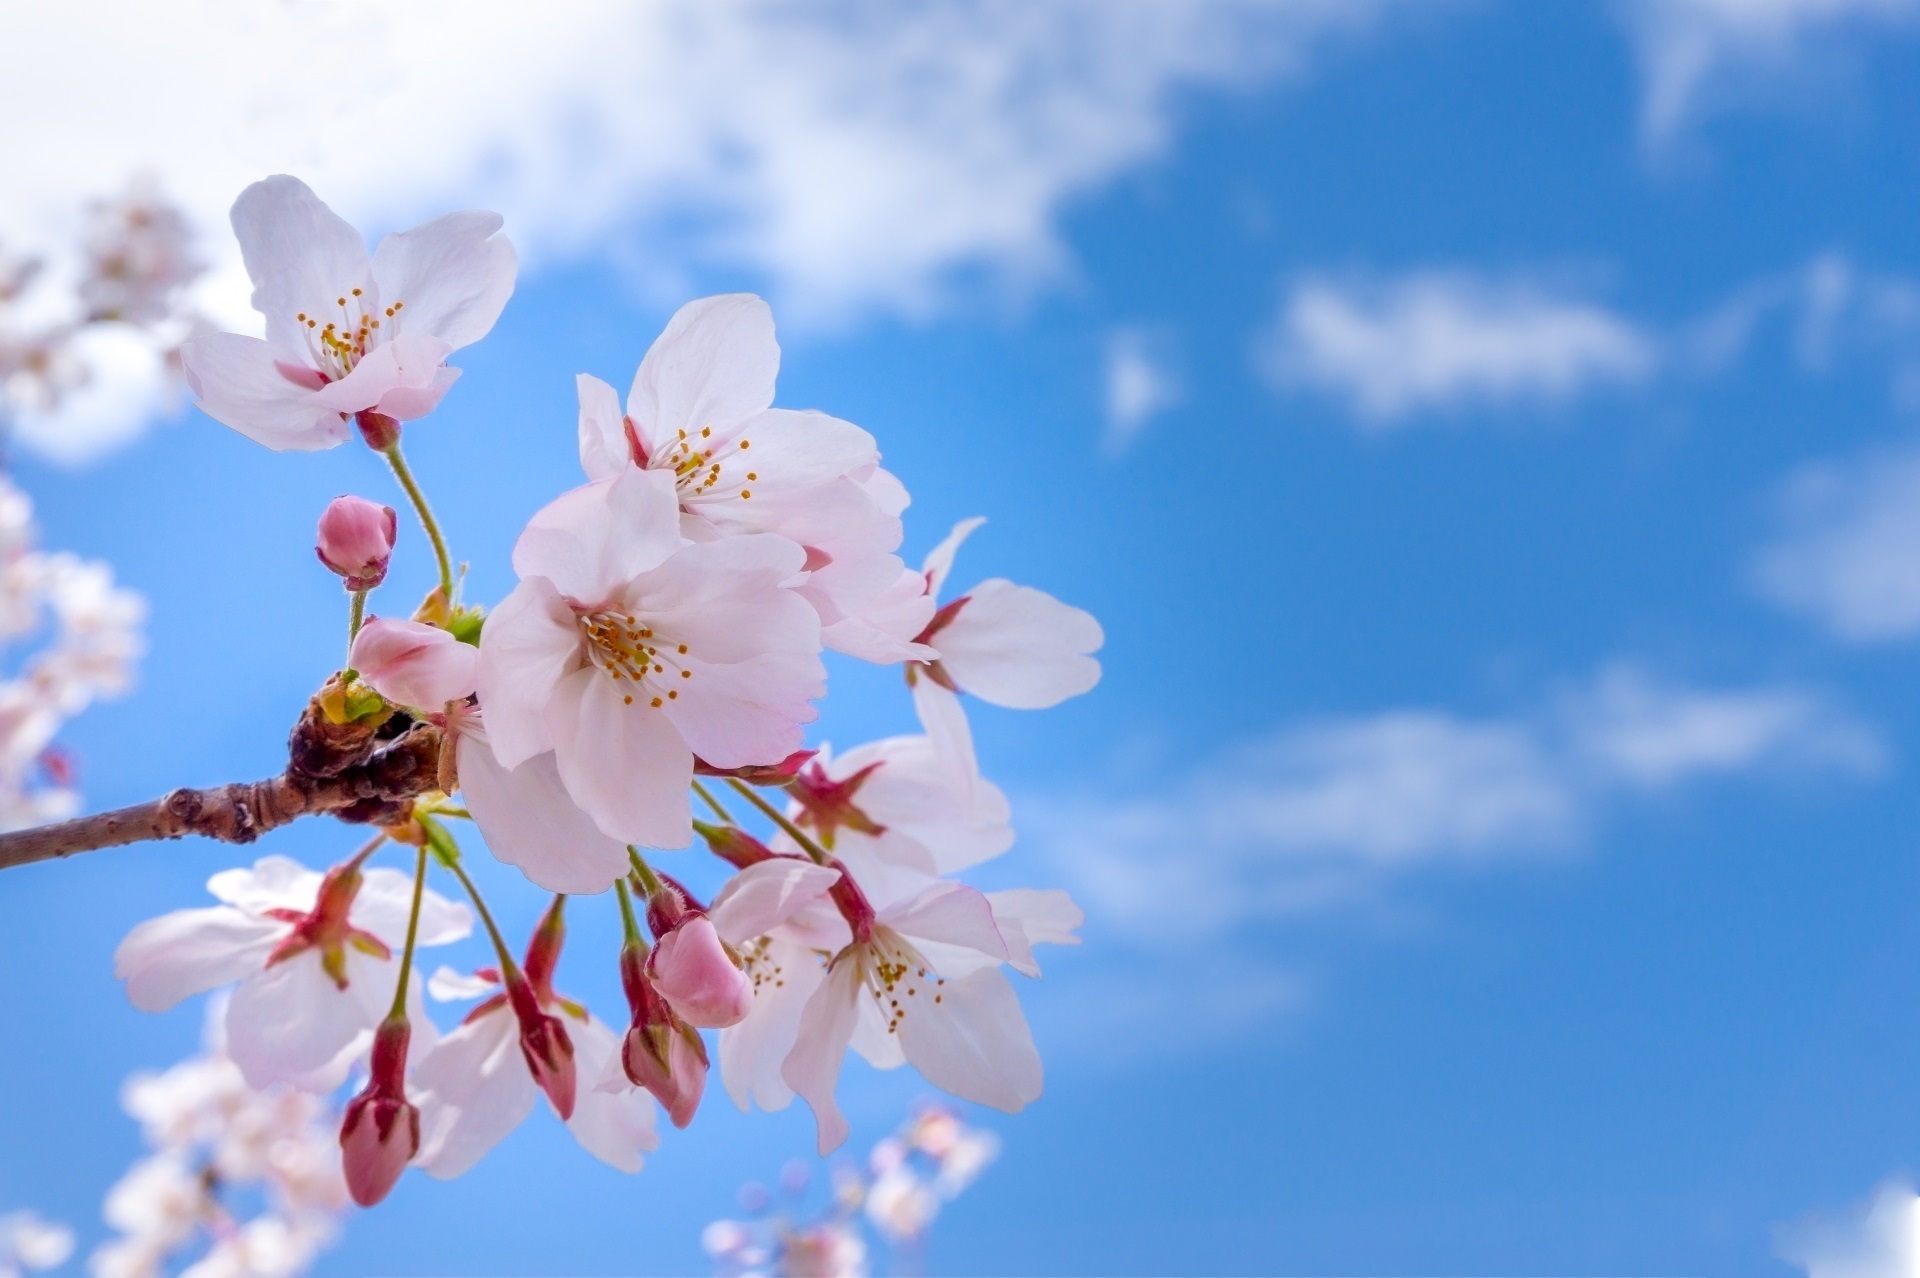 青空に映える桜の花